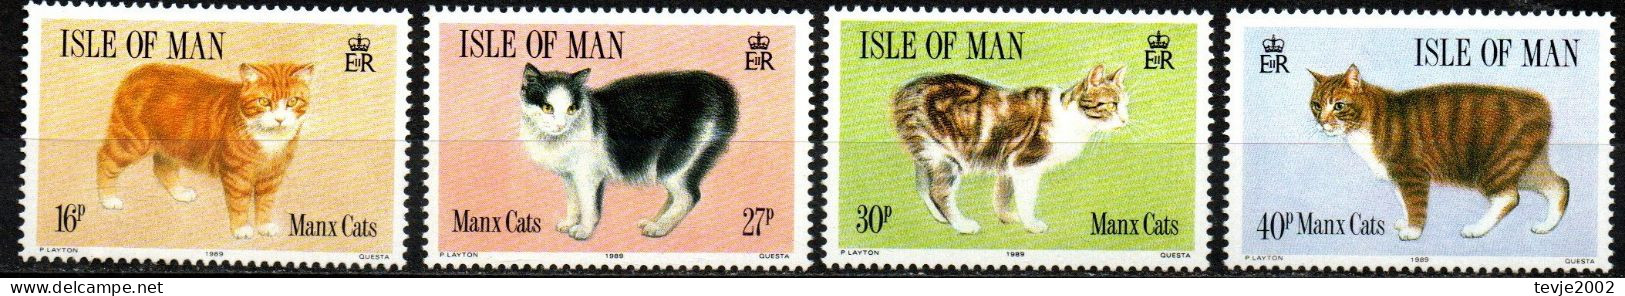 Isle Of Man 1989 - Mi.Nr. 383 - 389 - Postfrisch MNH - Tiere Animals Katzen Cats - Gatos Domésticos